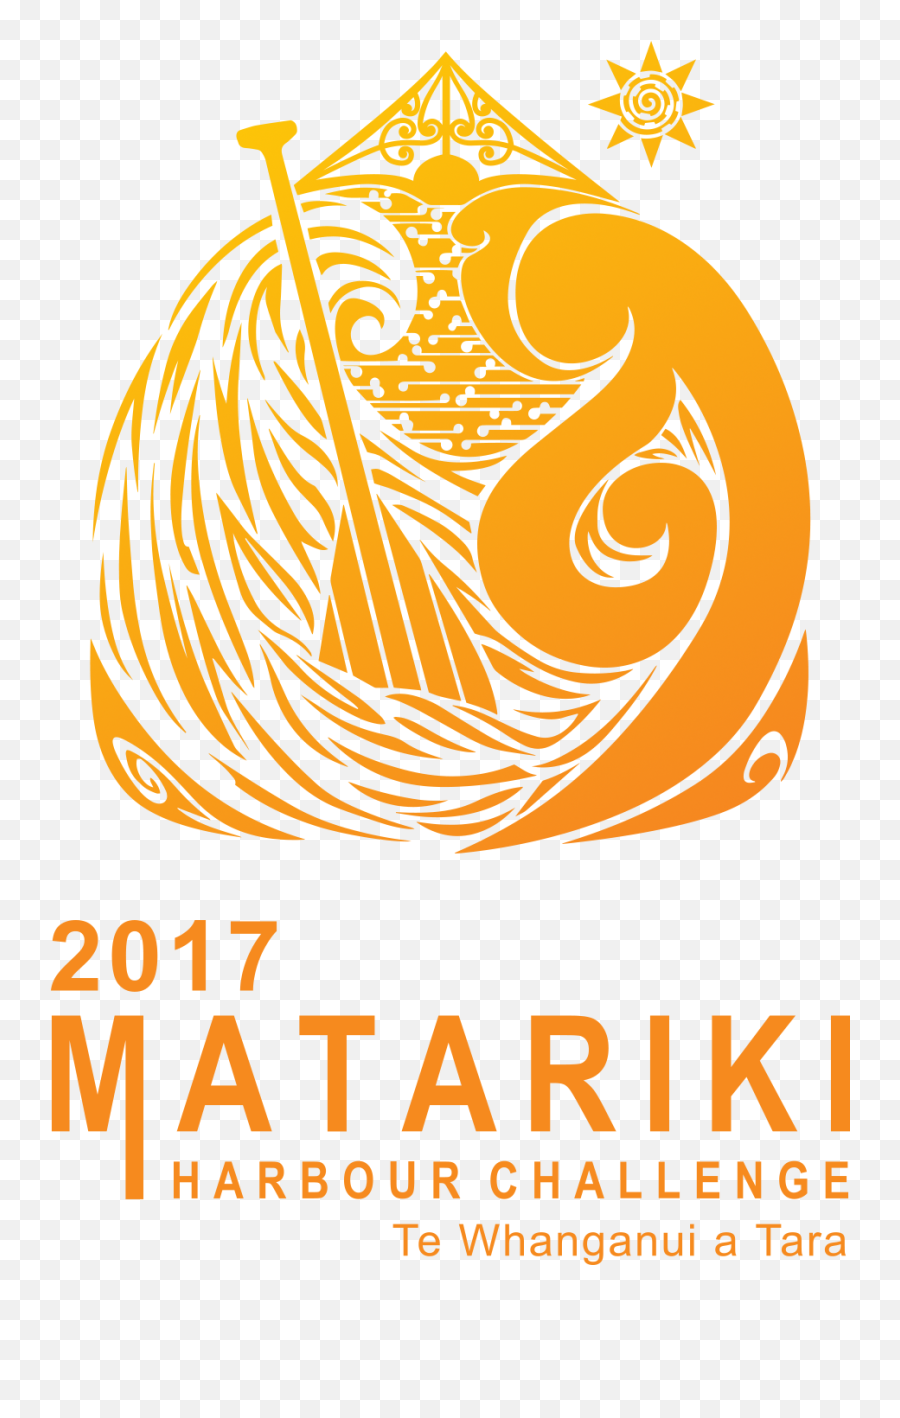 Hikoikoi Waka Ama - Design Features Waka Ama Design Emoji,Ama Logo